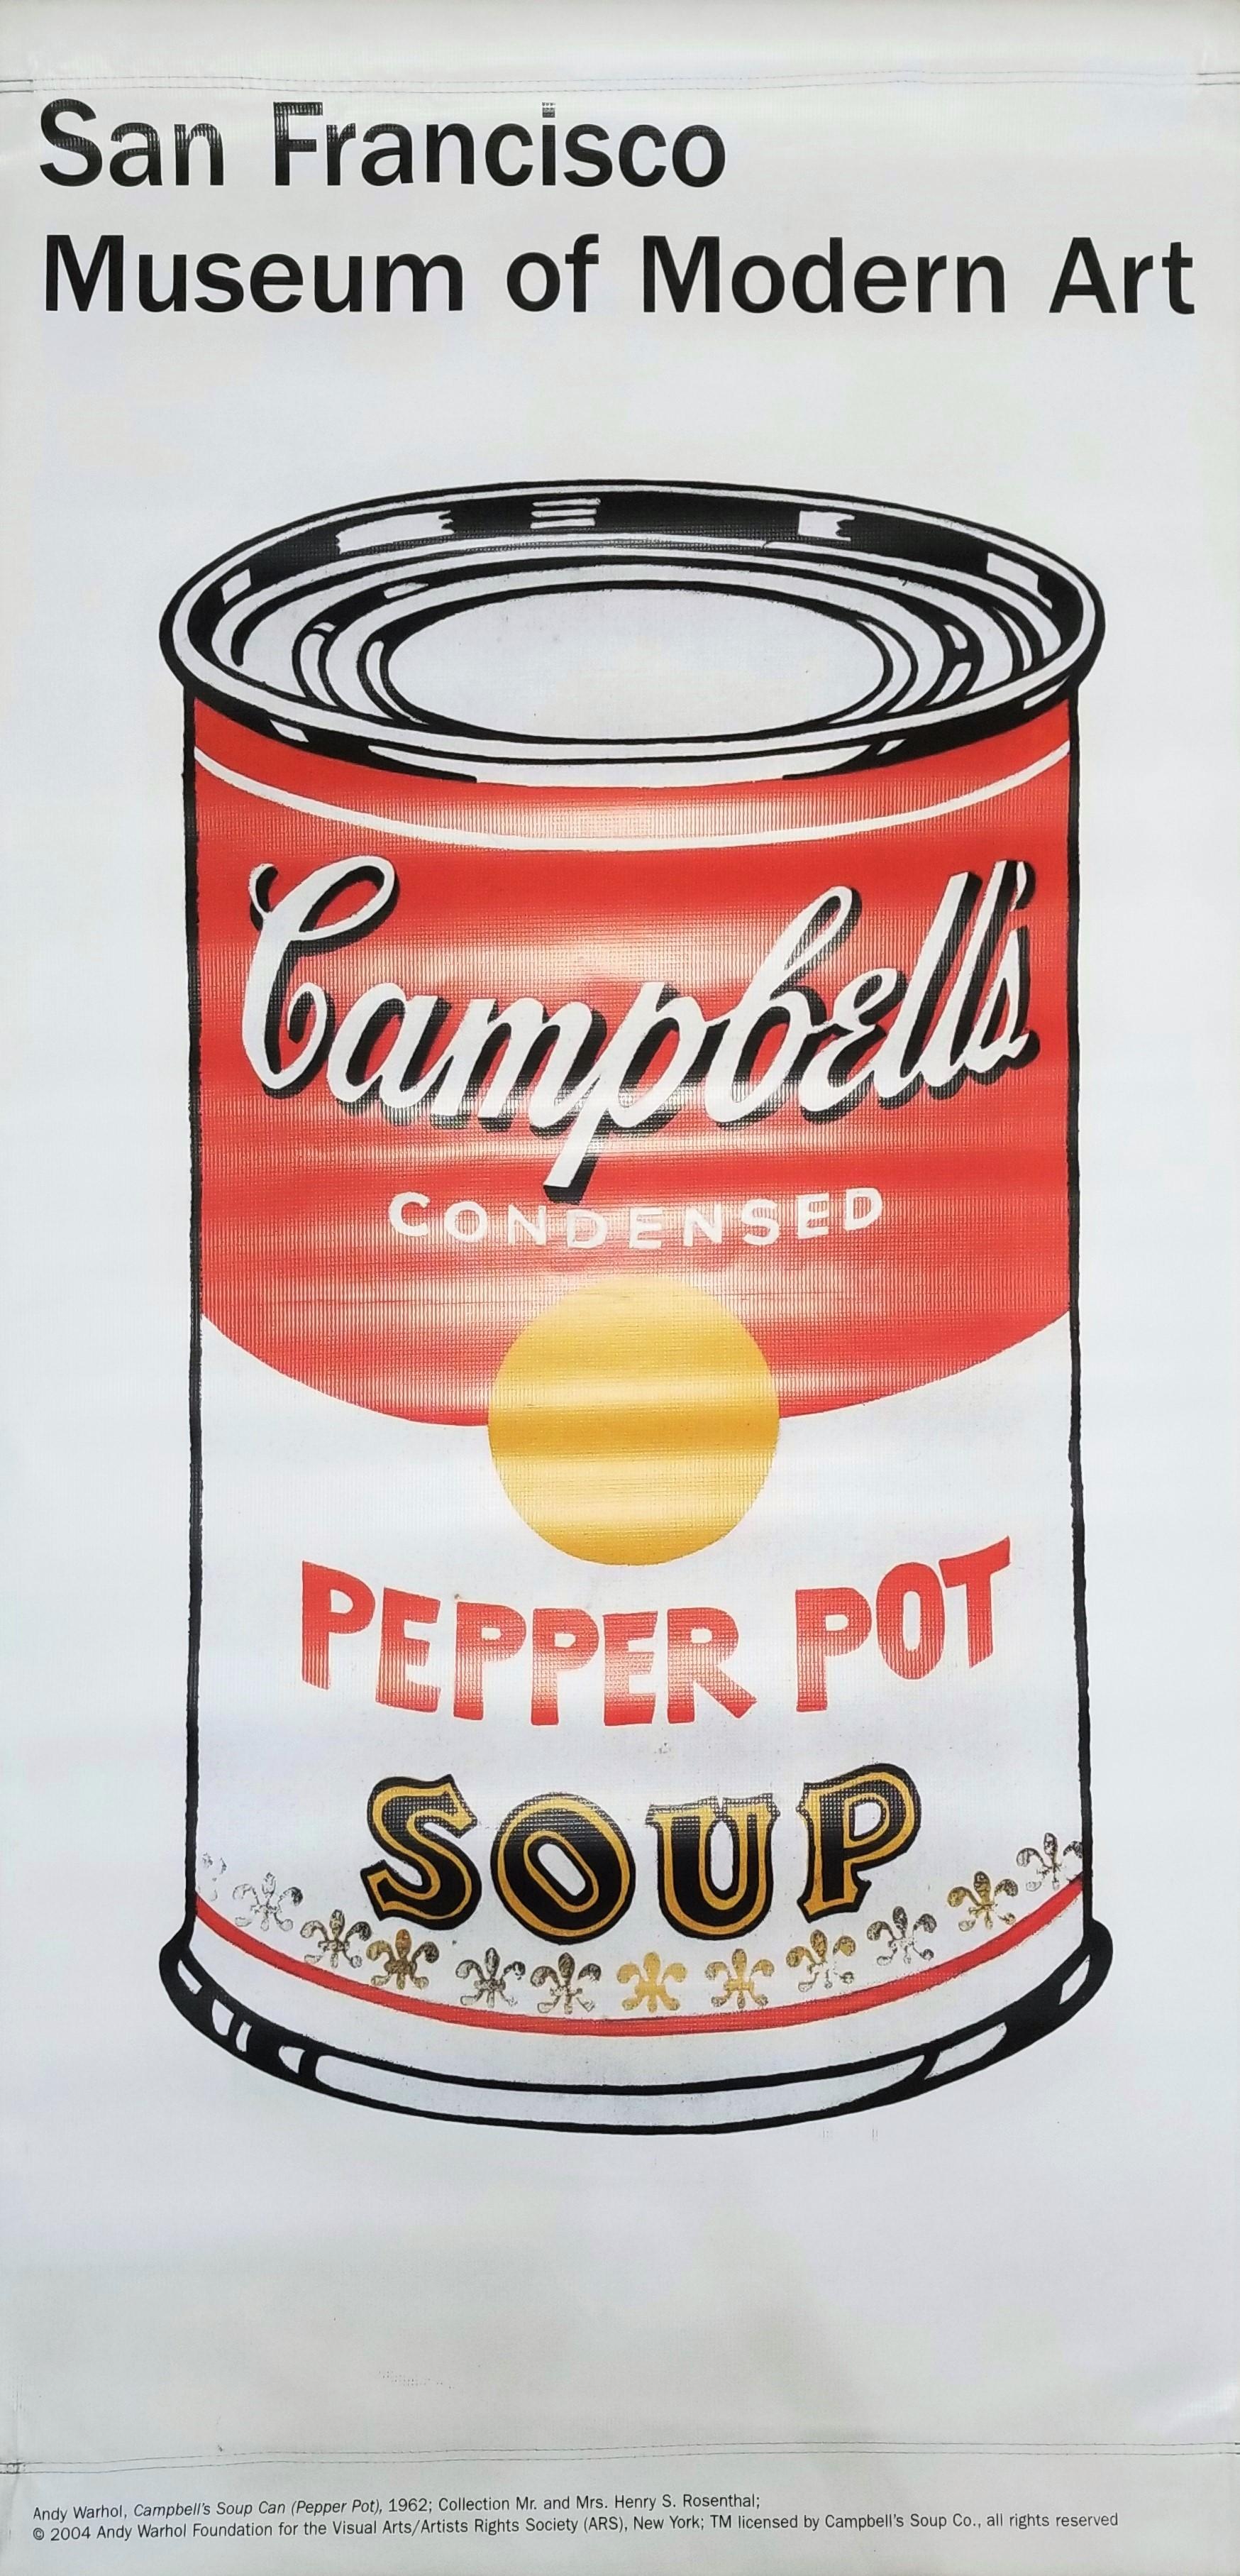 Künstler: (nach) Andy Warhol (Amerikaner, 1928-1987)
Titel: ³eSan Francisco Museum of Art (Pfefferstreuer)³c
Jahr: 2004
Medium: Original (doppelseitig) Offset-Lithographie auf Vinyl, Museum Street Banner
Limitierte Auflage: